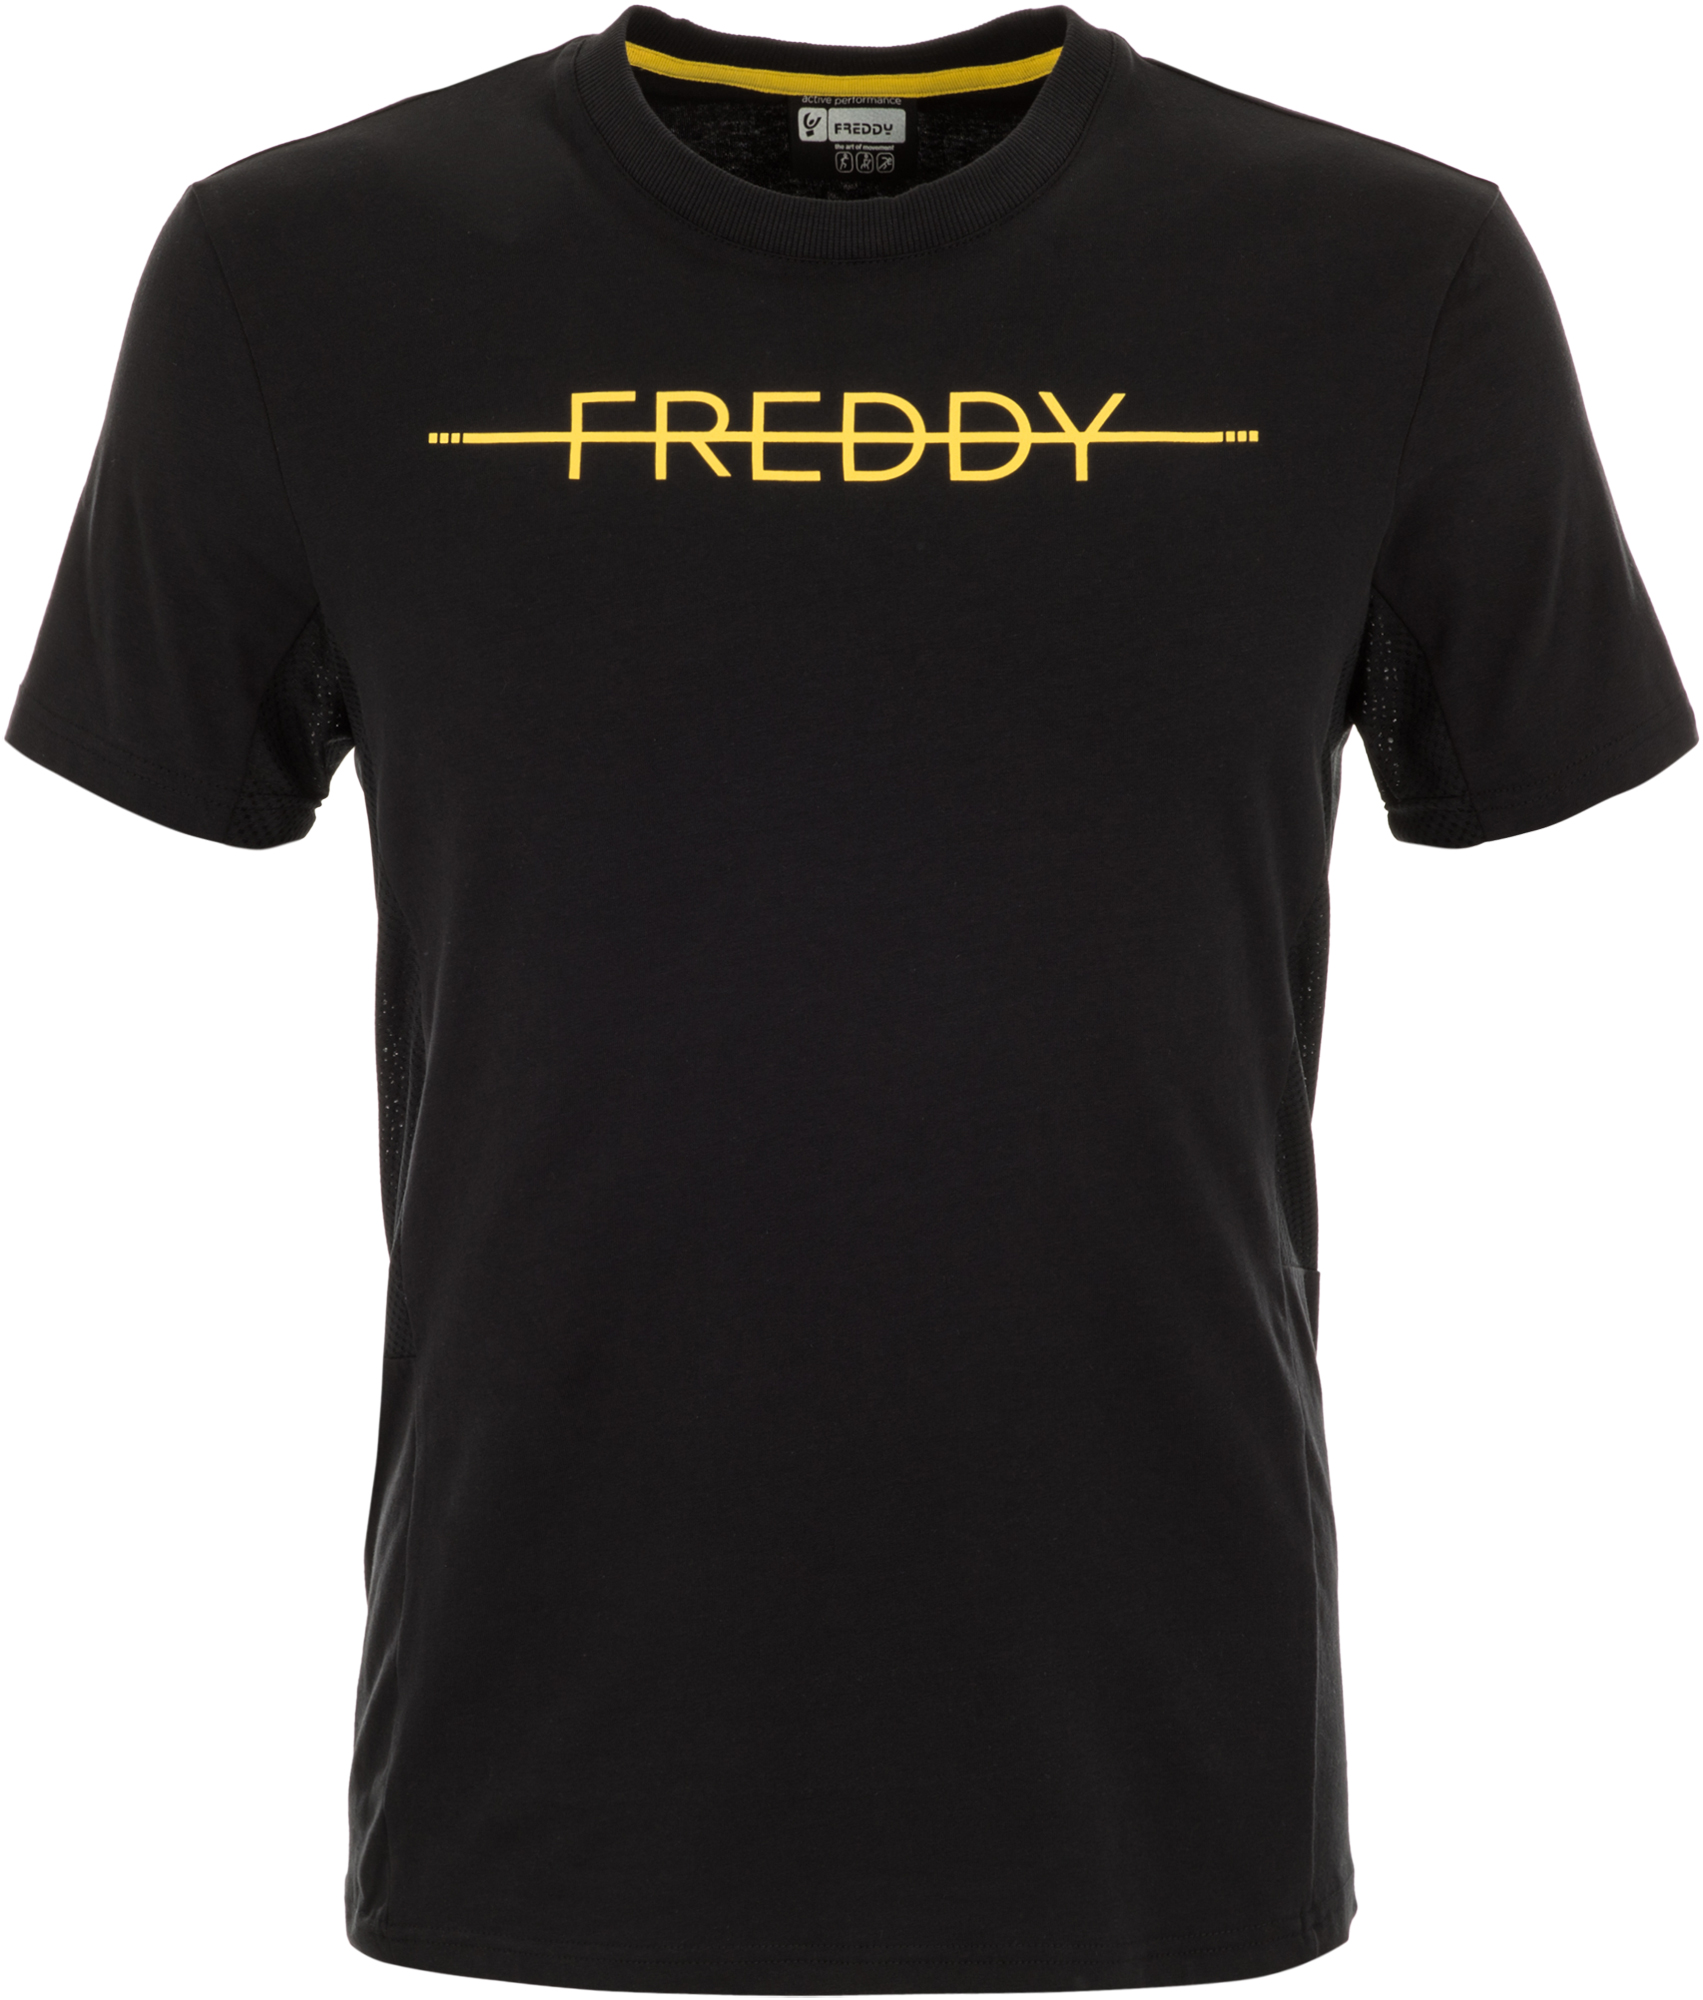 Freddy Футболка мужская Freddy New Athletic, размер 46-48